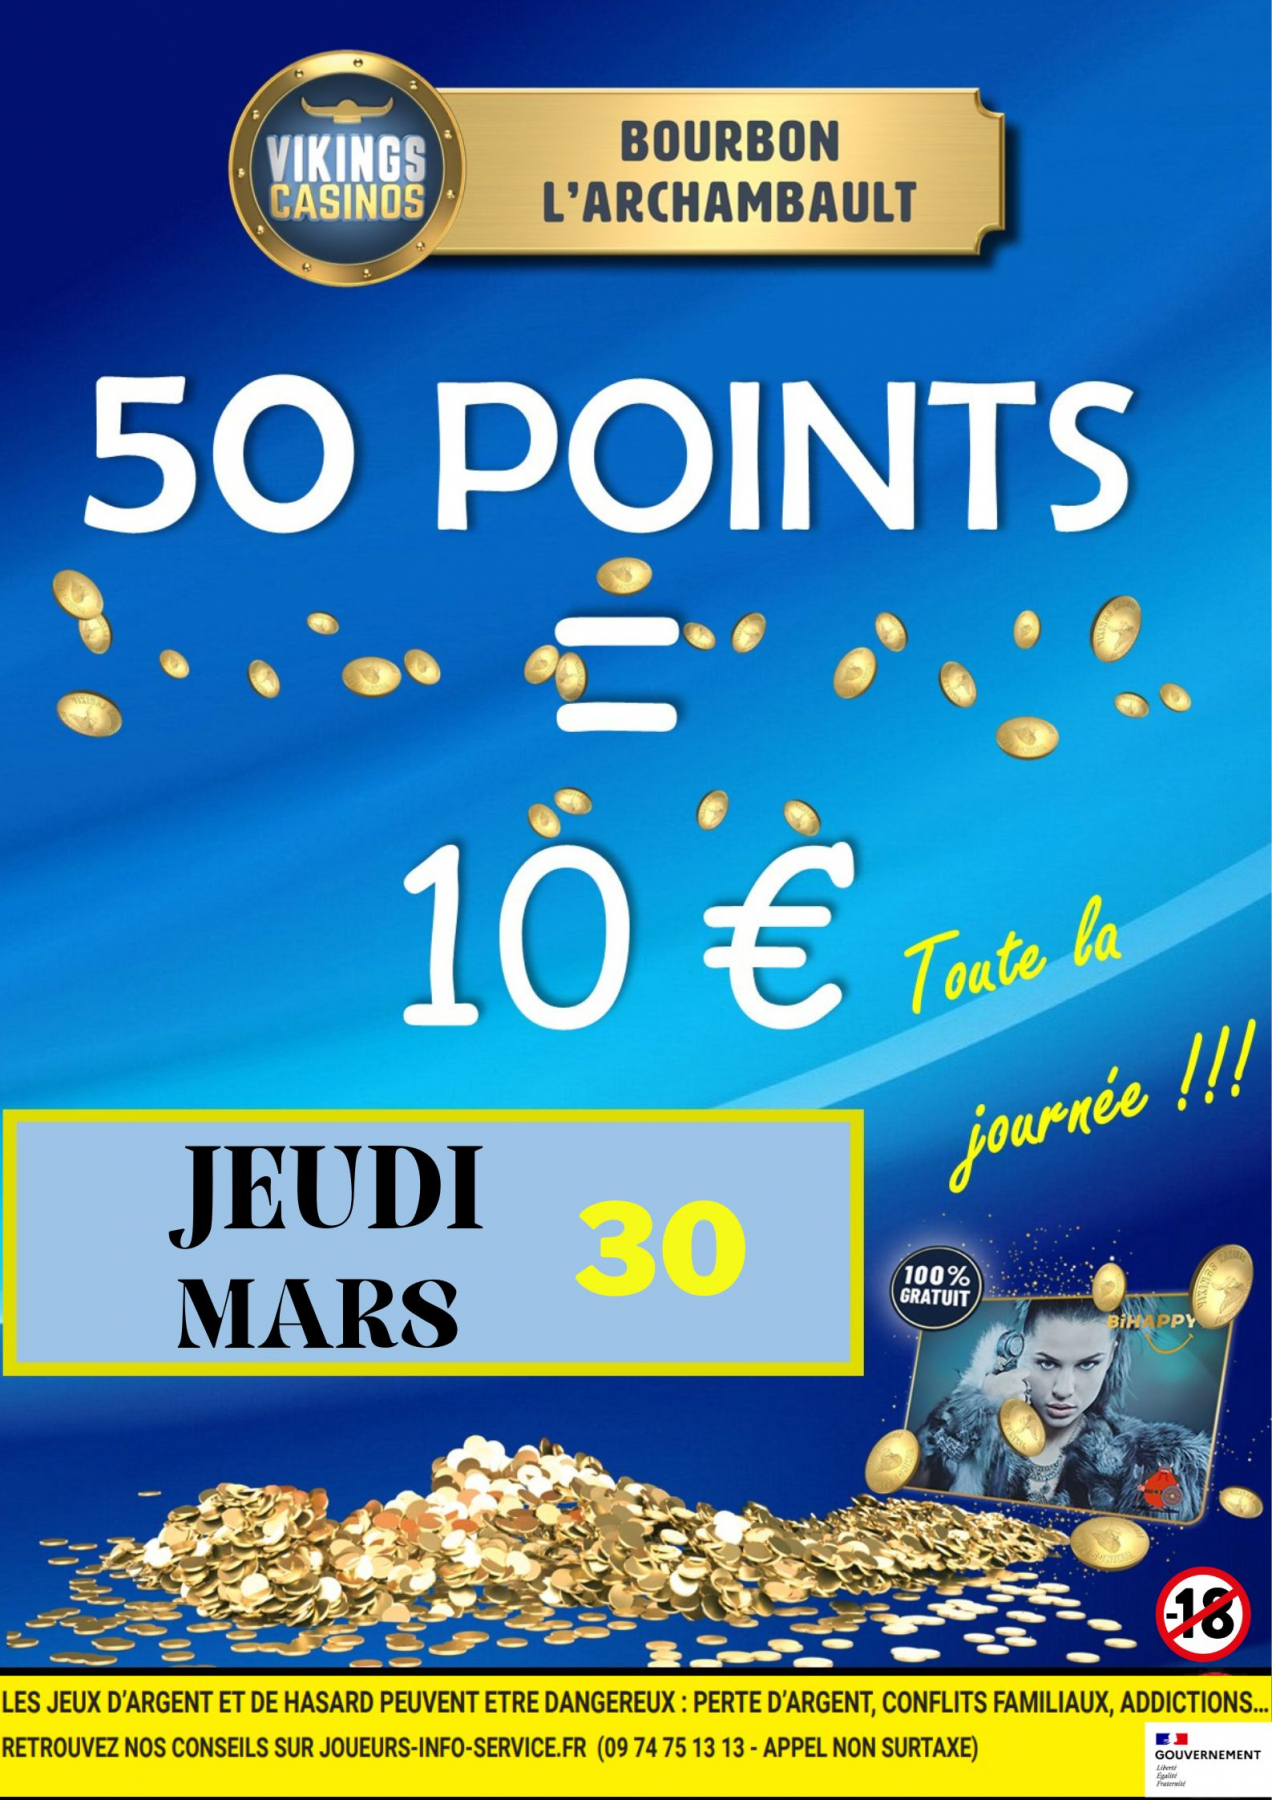 B2B 50 Points / 10 €